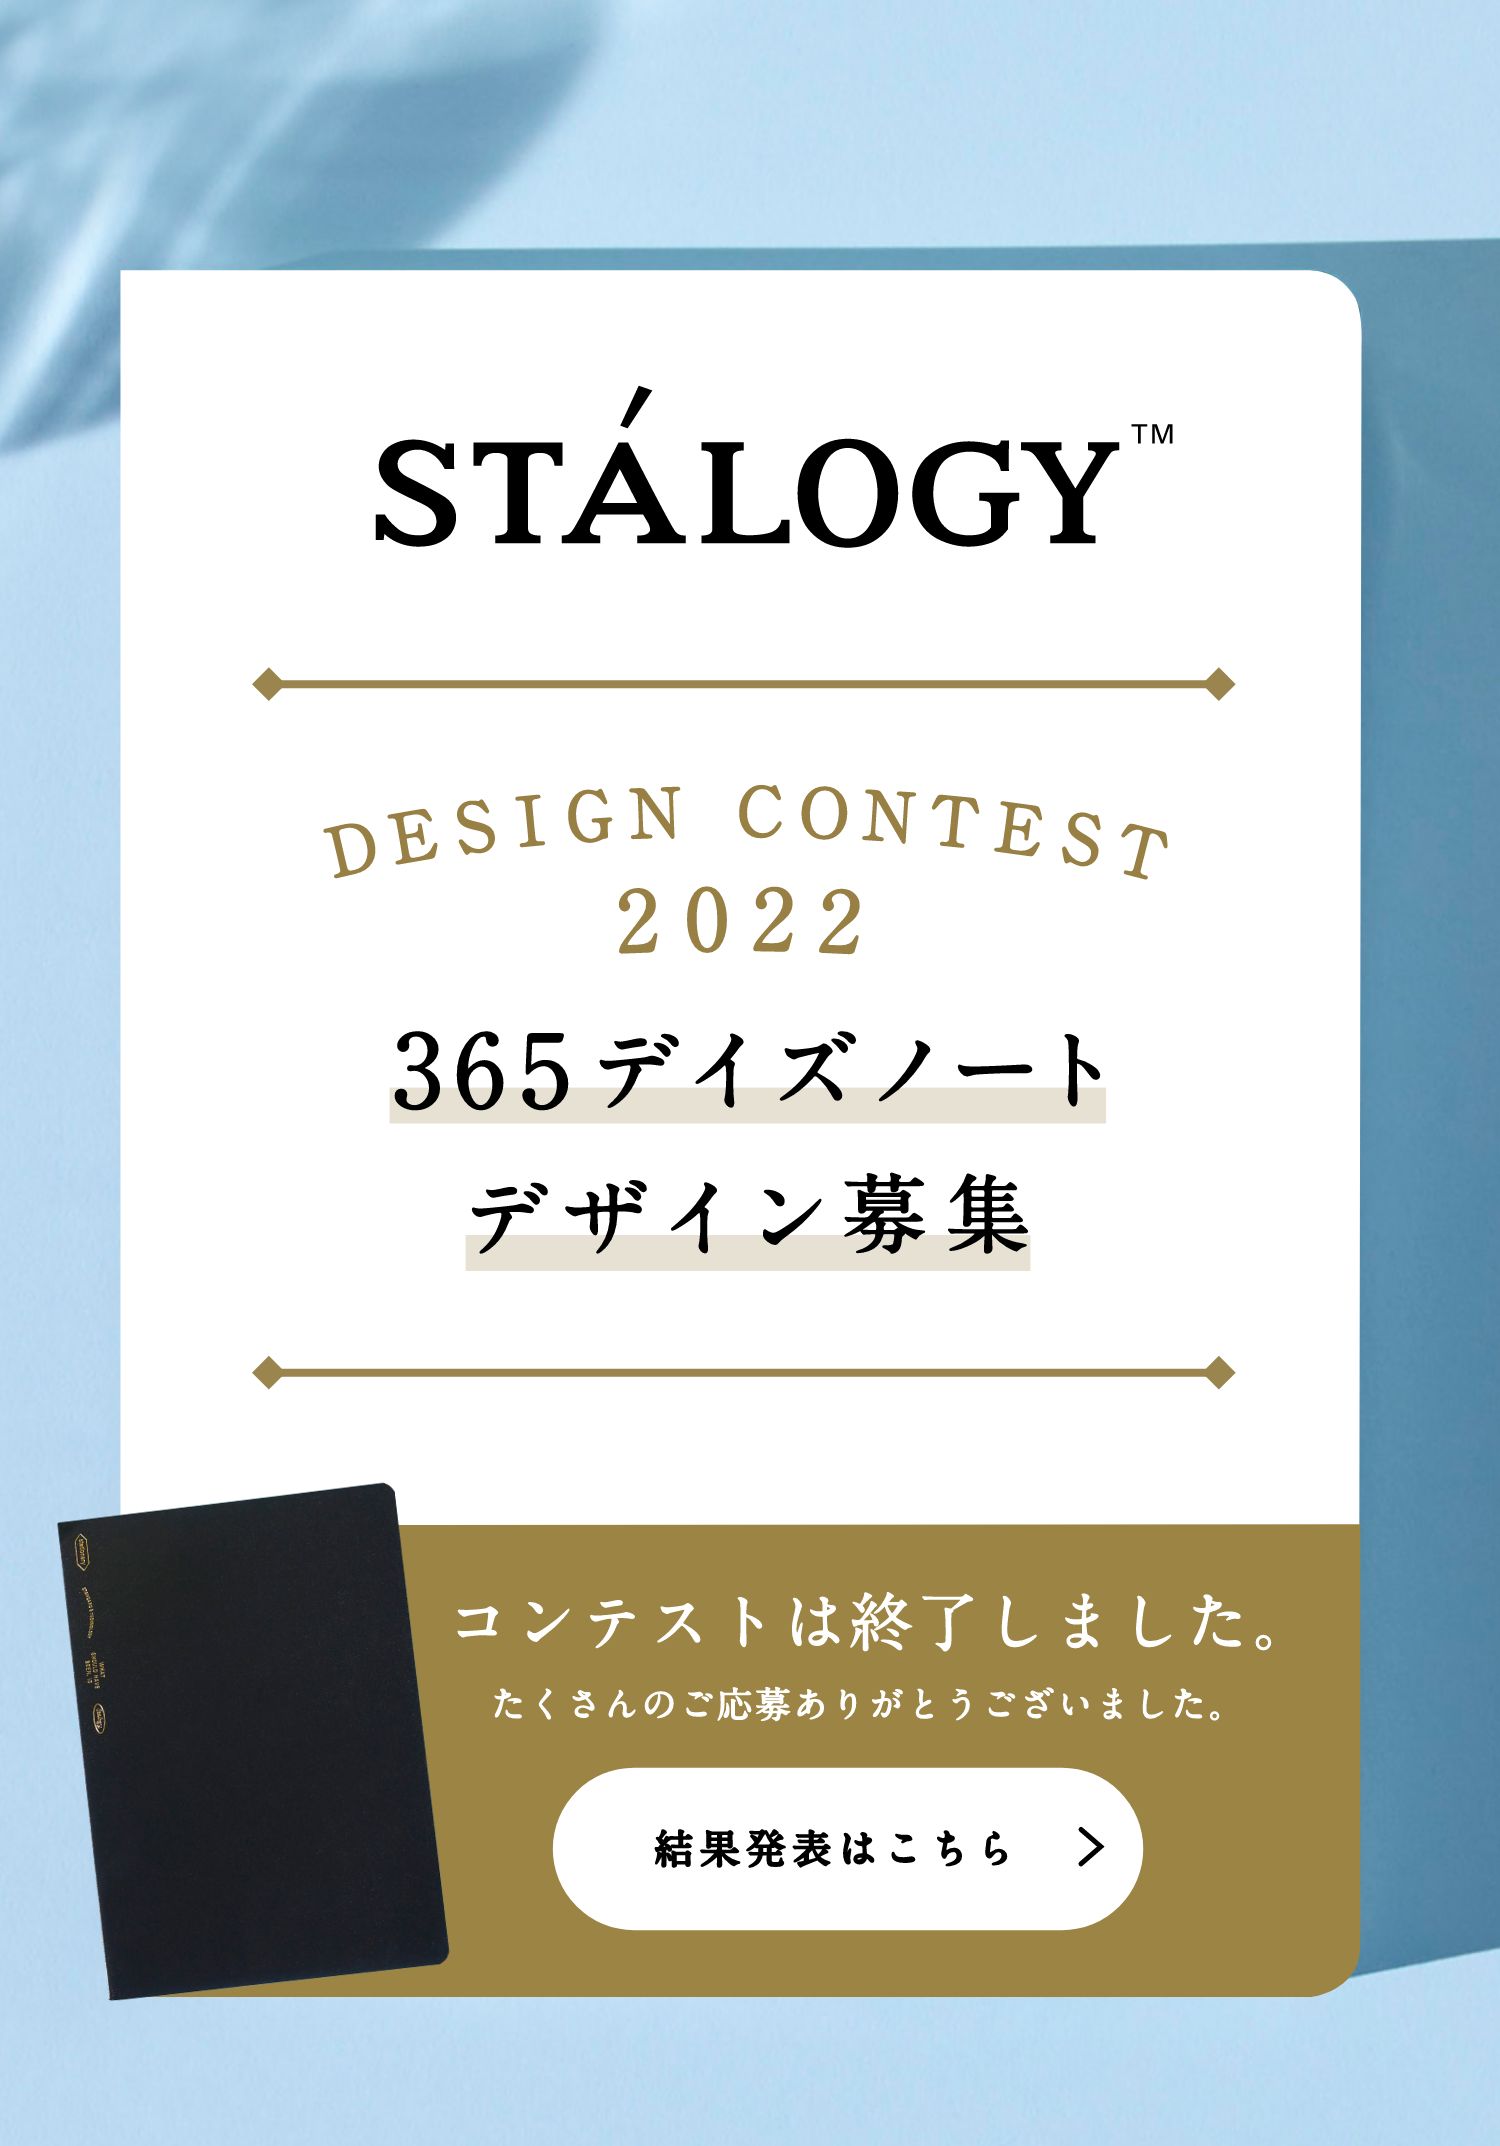 STÁLOGY™ DESIGN CONTEST 2022 365デイズノート デザイン募集中 コンテストは終了しました。たくさんのご応募ありがとうございました。